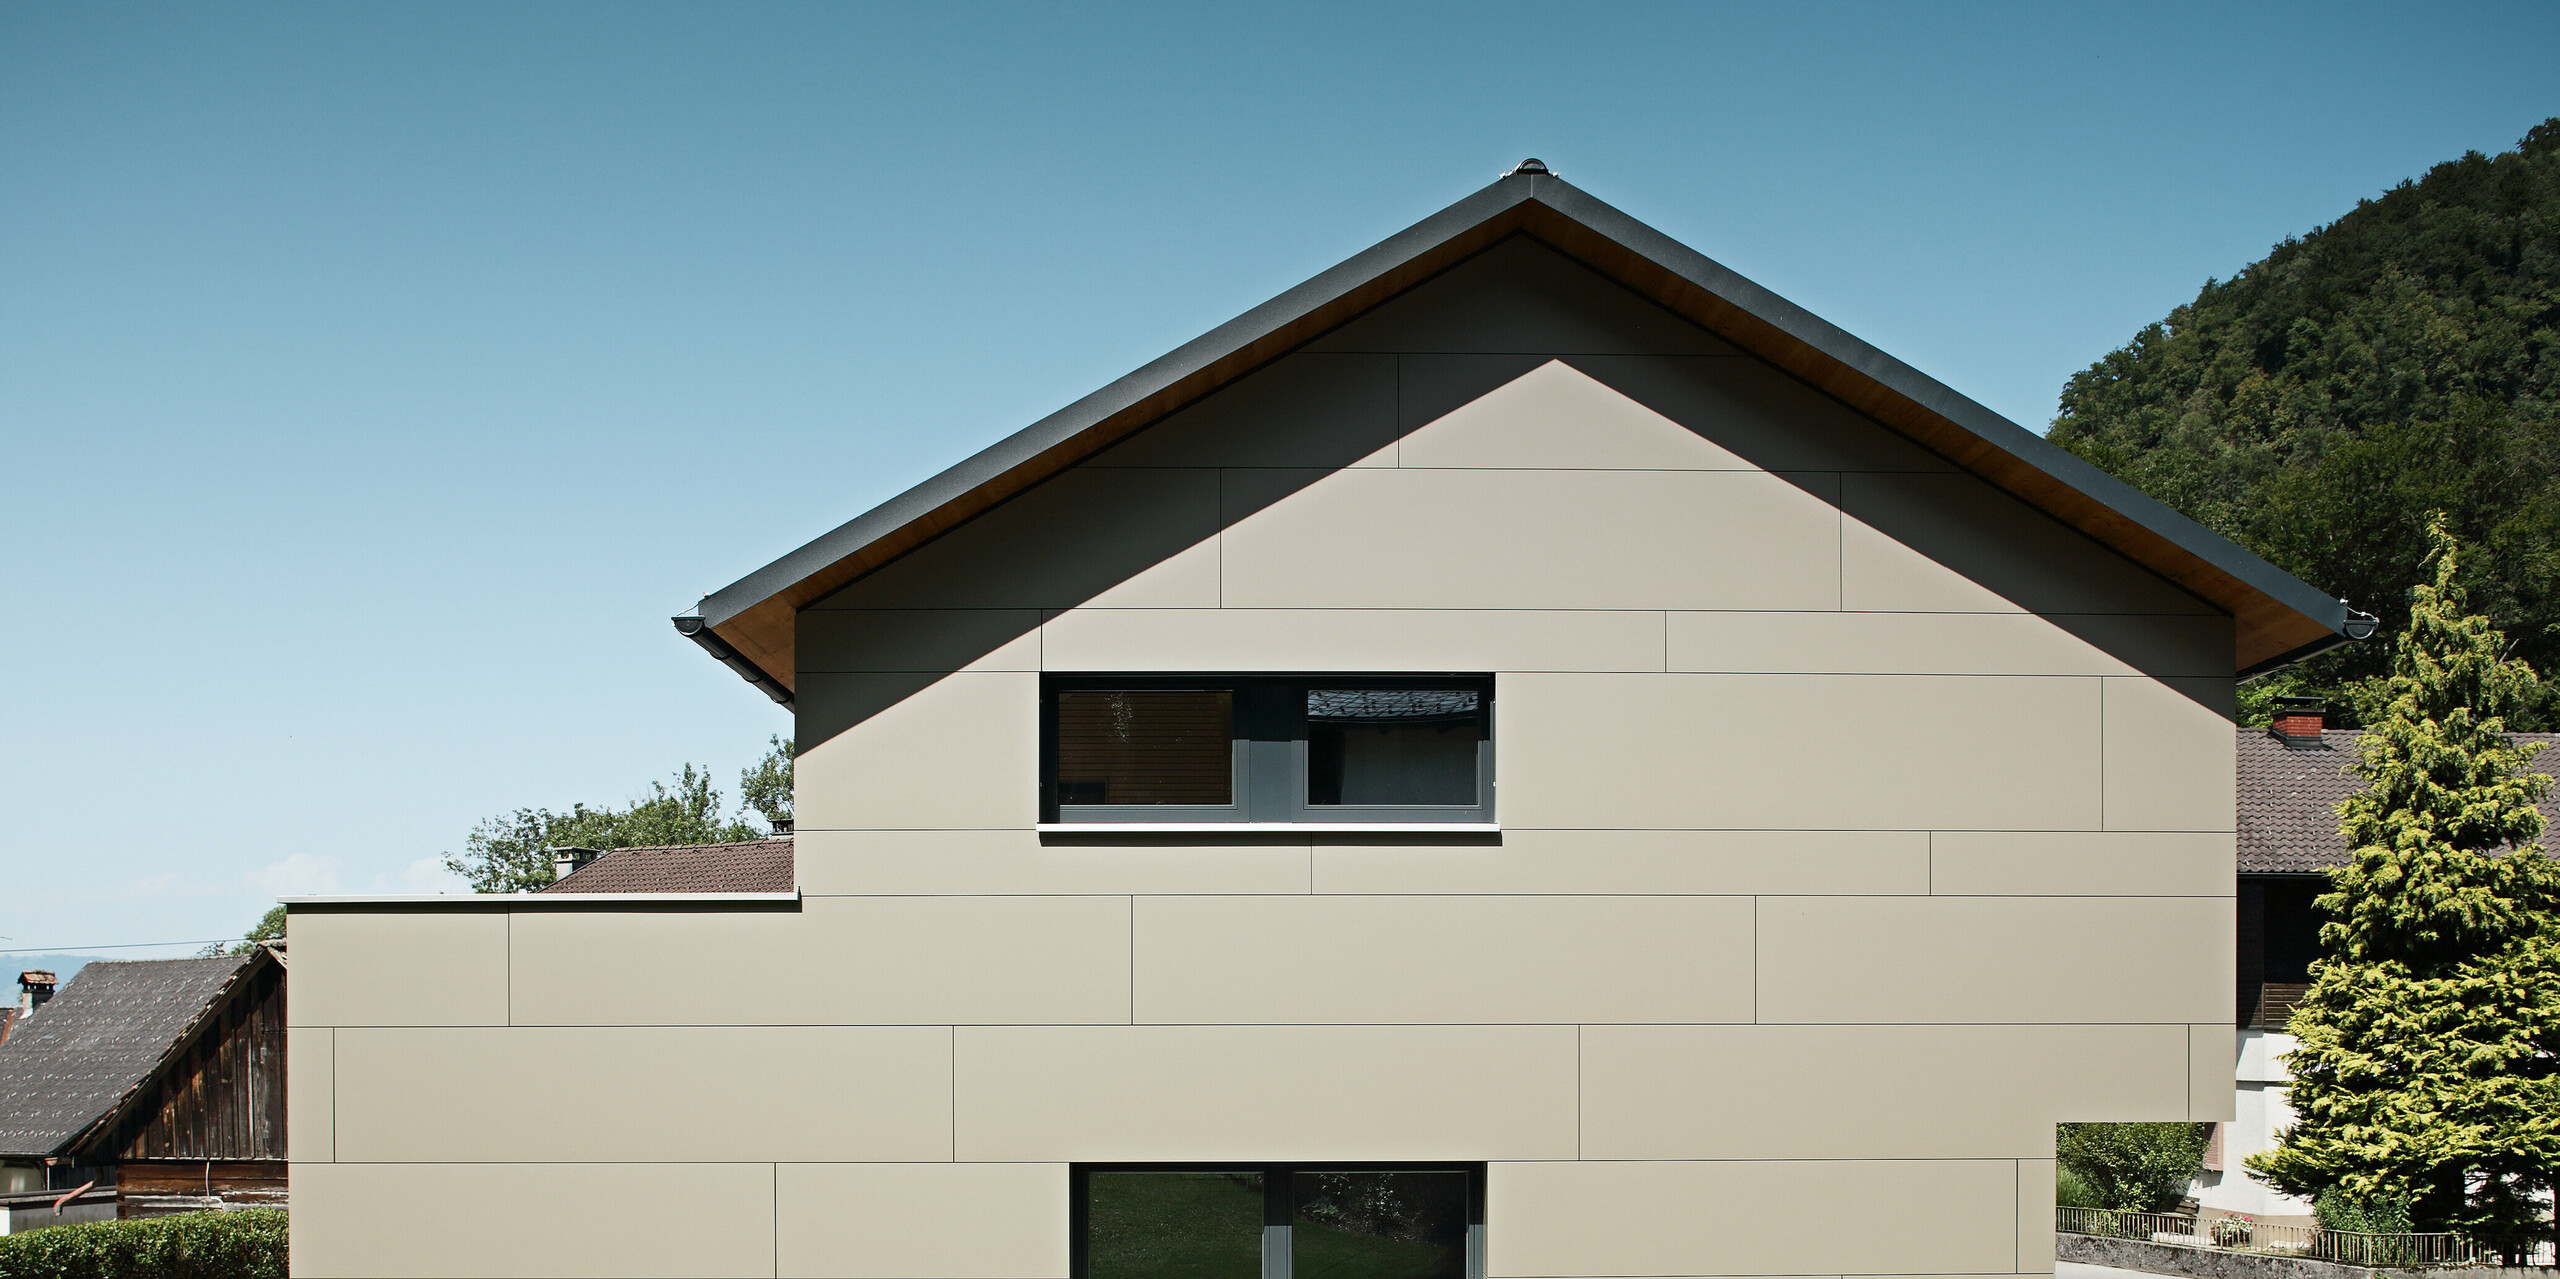 Frontansicht eines modernen Einfamilienhauses in Hohenems, das mit einem PREFA Aluminium Verbundplatten-Fassadensystem in Bronzemetallic verkleidet ist. Die Fassade zeigt eine harmonische Abfolge von horizontalen Linien, die eine ruhige und gleichzeitig zeitgenössische Ästhetik vermitteln. Das Haus fügt sich mit seiner zurückhaltenden Farbgebung und dem klaren Design nahtlos in die umgebende Landschaft ein, während das PREFA Dach – bestehend aus klassischen Dachplatten in P.10 Anthrazit – einen subtilen Kontrast bildet und den langlebigen Charakter des Gebäudes unterstreicht.